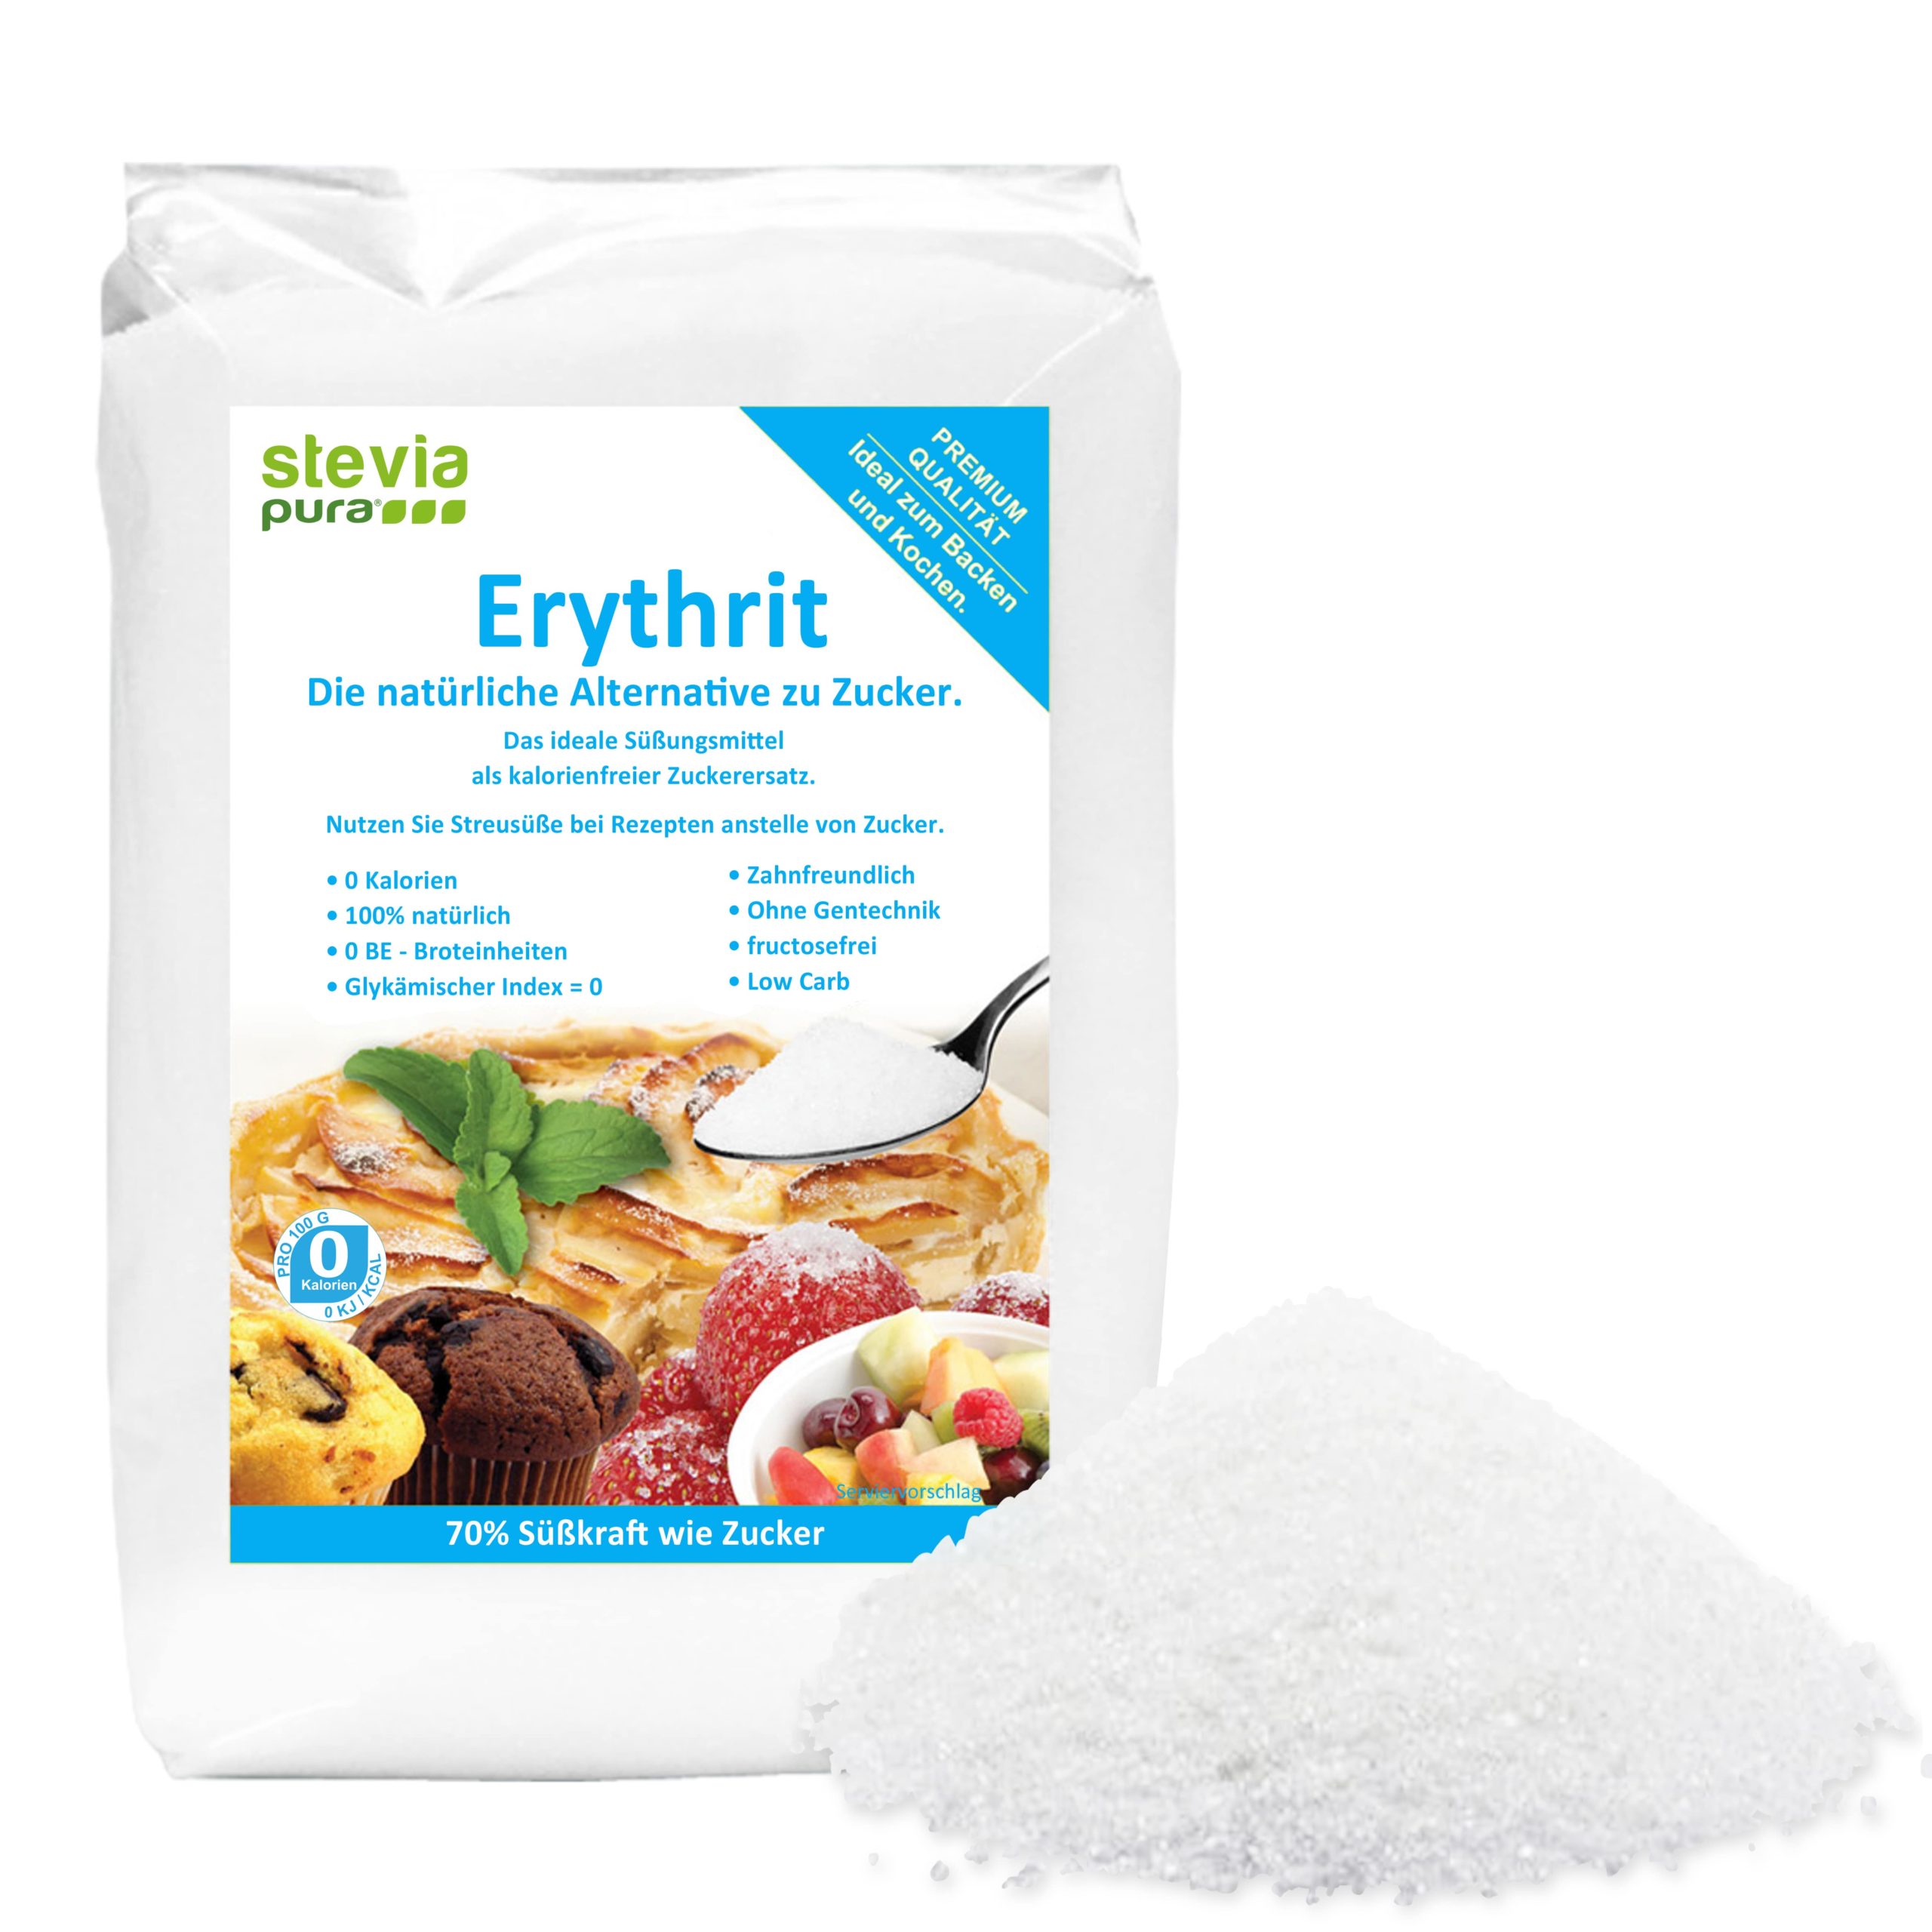 Erythrit Zuckerersatz ist für Diabetiker.